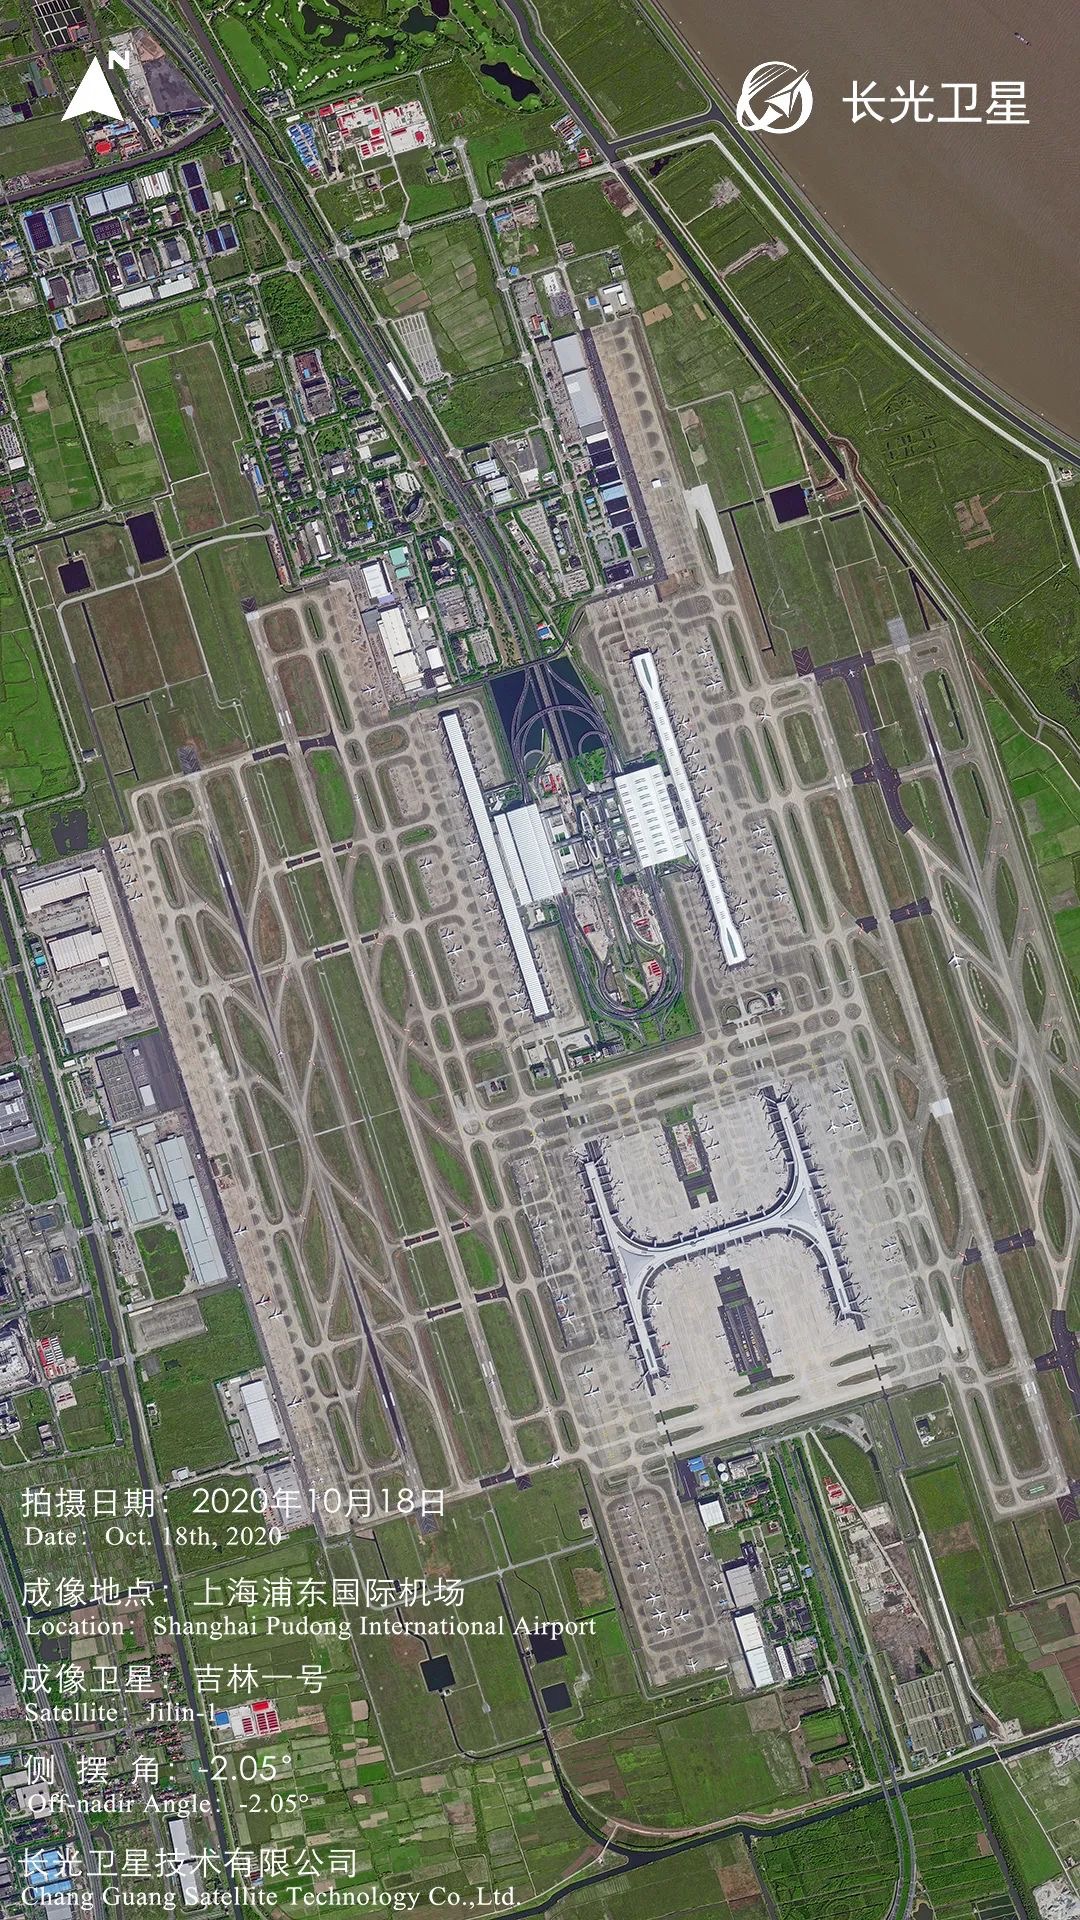 吉林一号拍摄的上海浦东国际机场,图片来自"吉林一号"微信公众号